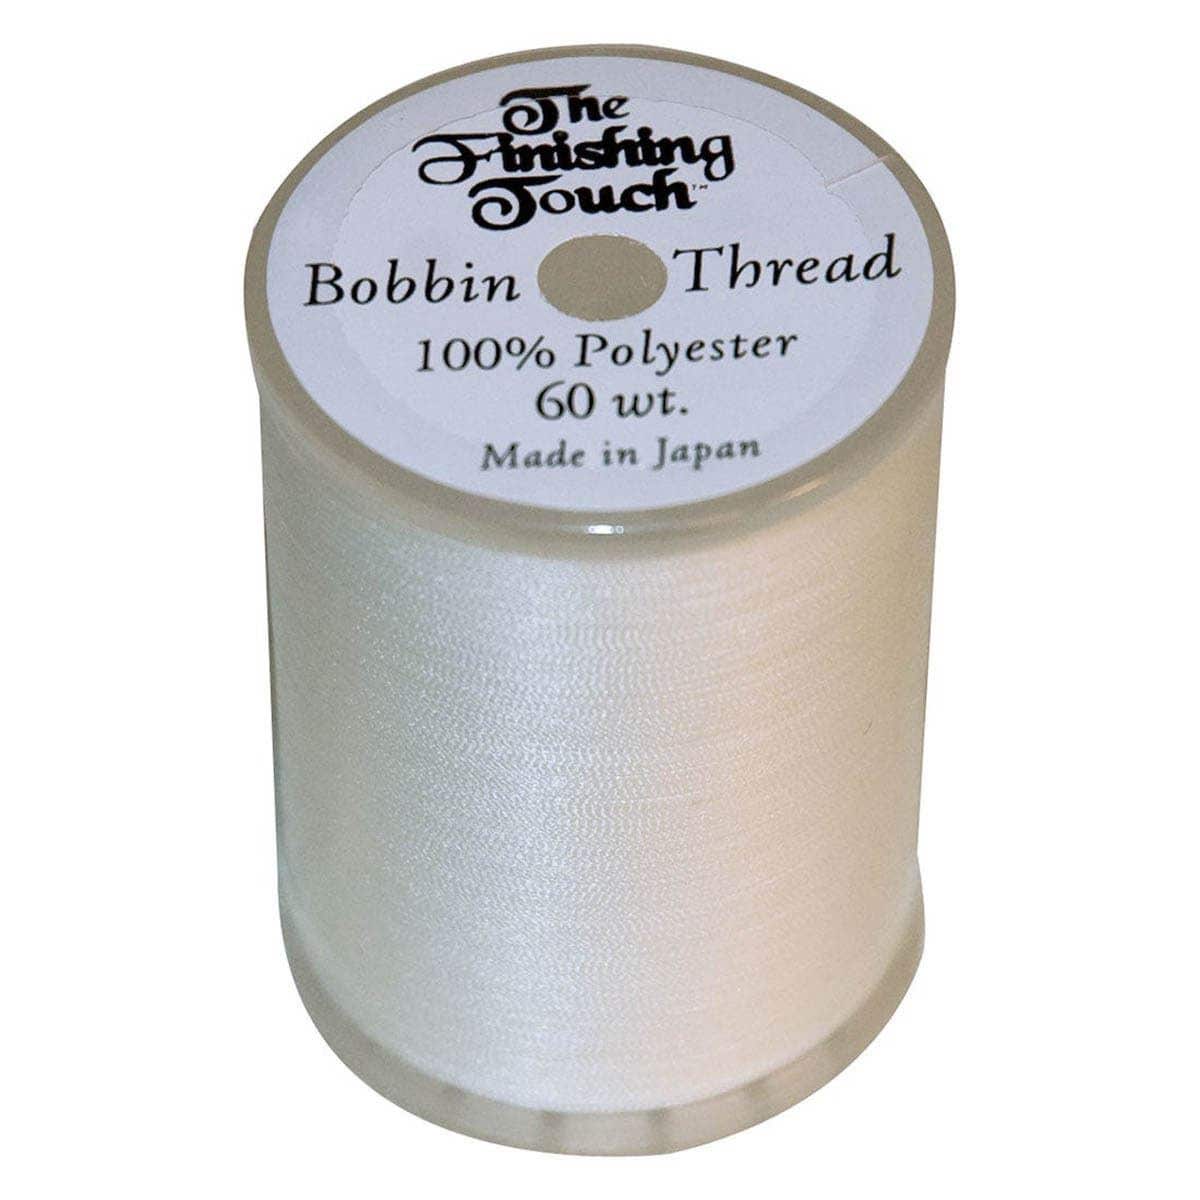 Embroidery Bobbin Thread